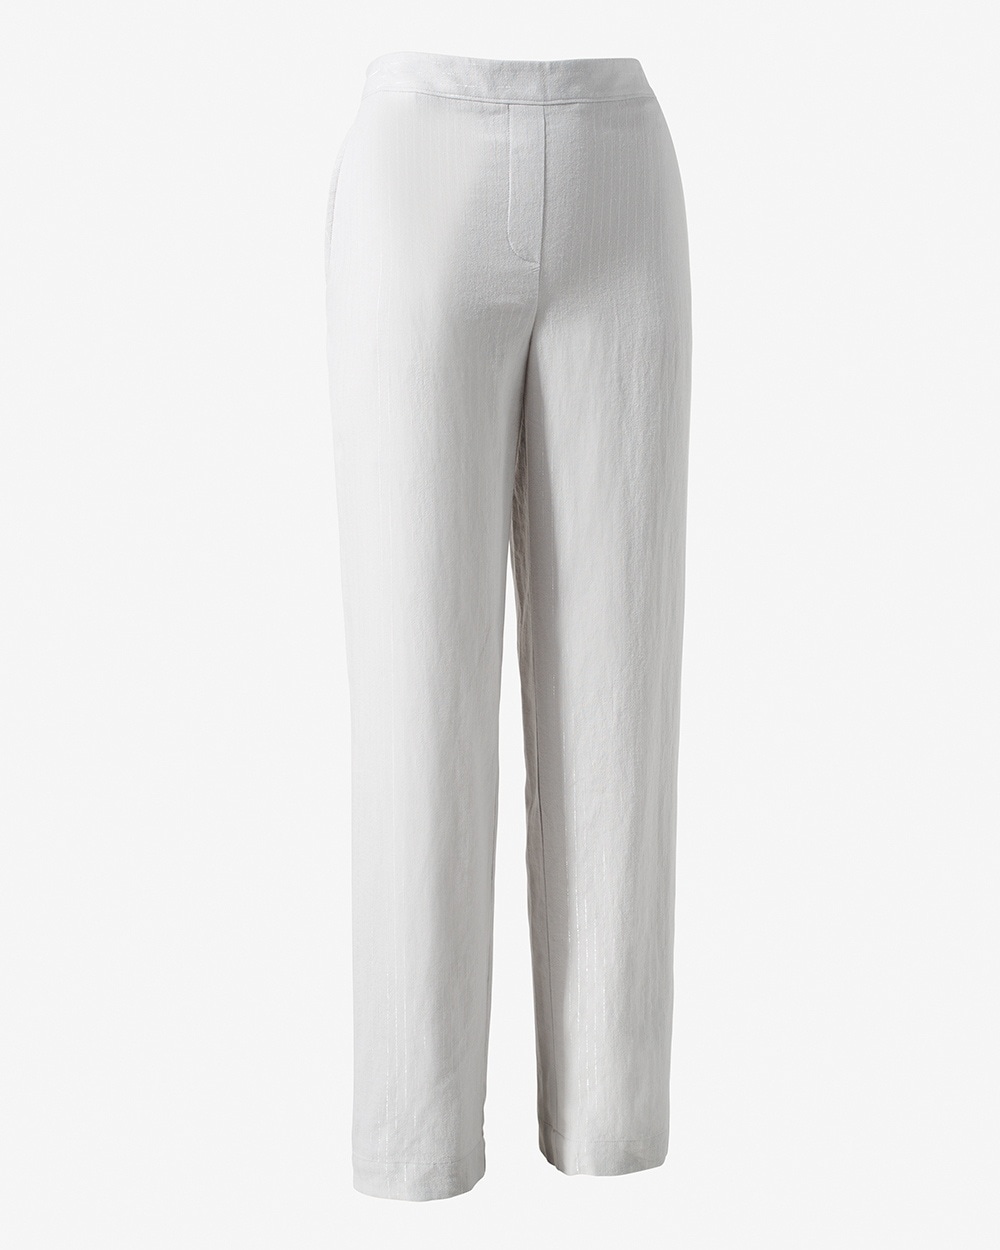 Lurex Stripe Linen Pants